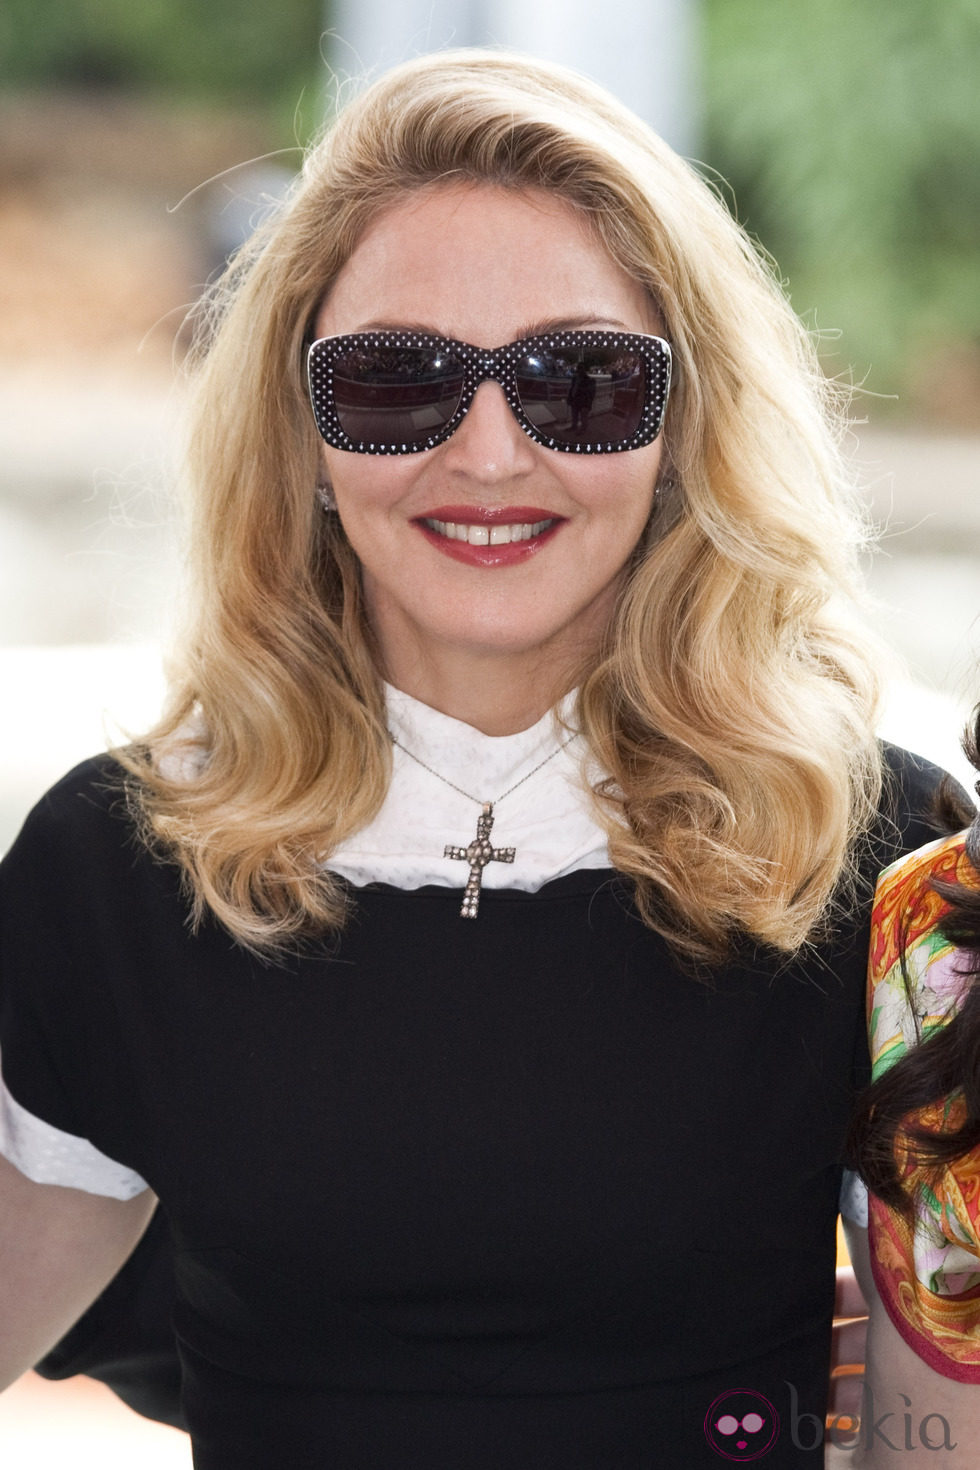 Madonna llega a la Mostra de Venecia para presentar 'W.E.'